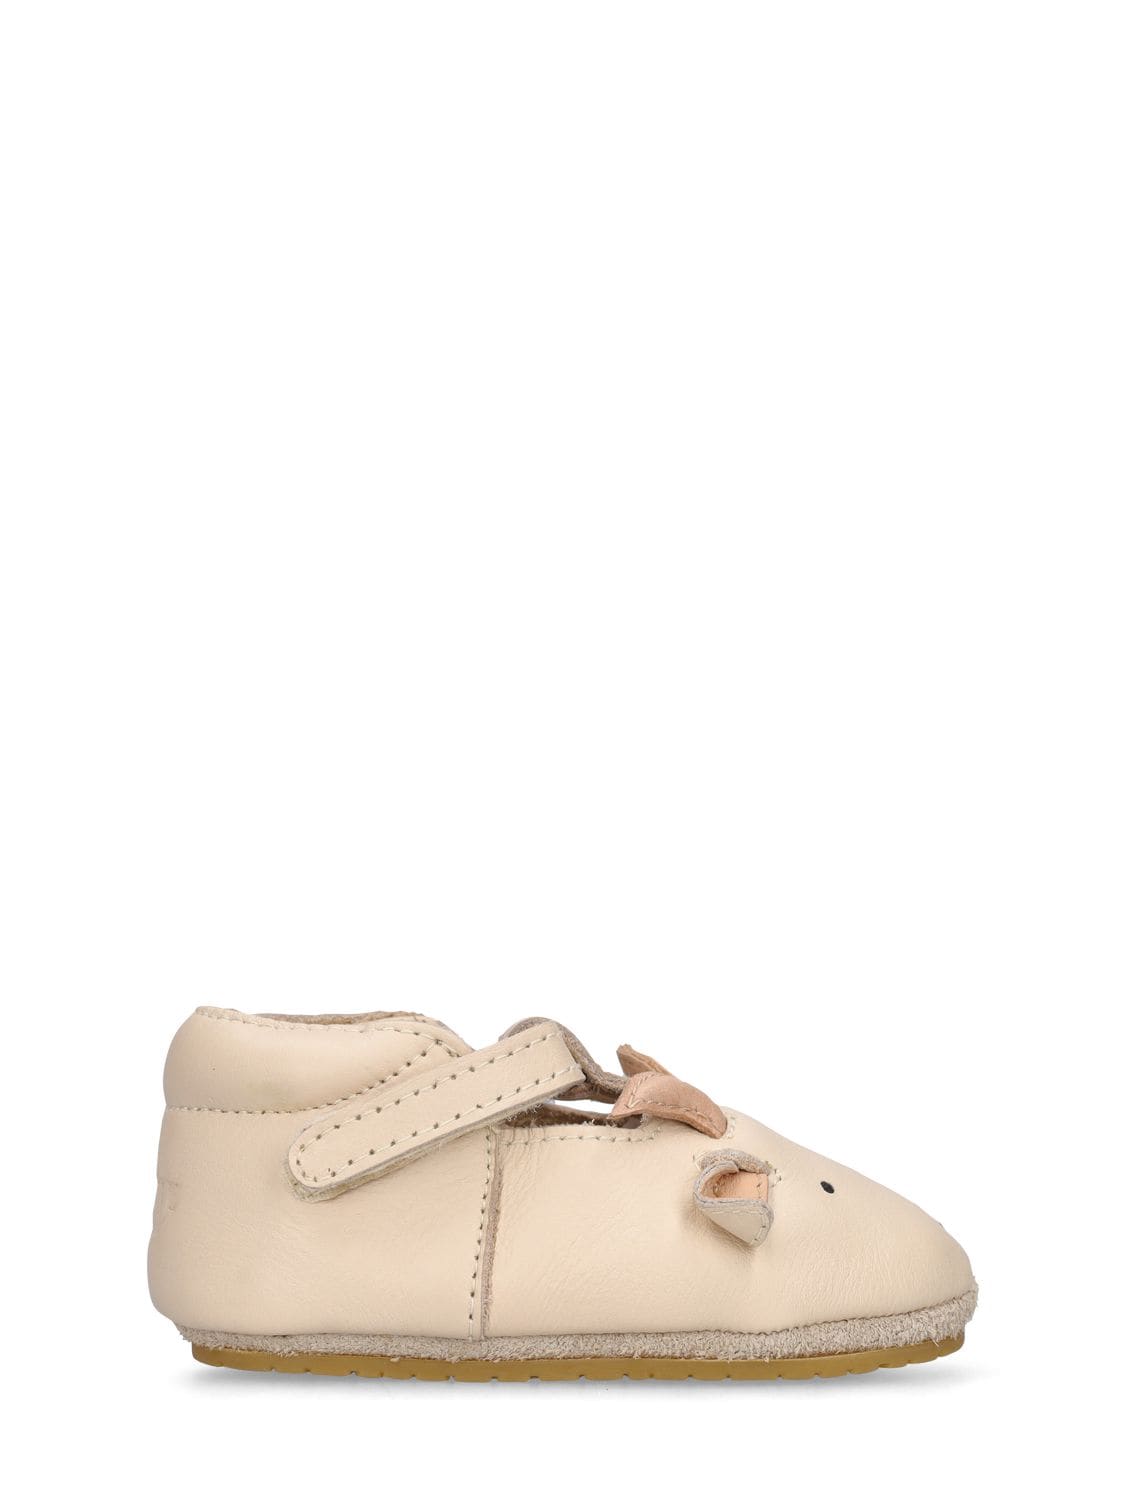 Donsje Babies' Sheep Leather Pre-walker Shoes In Beige